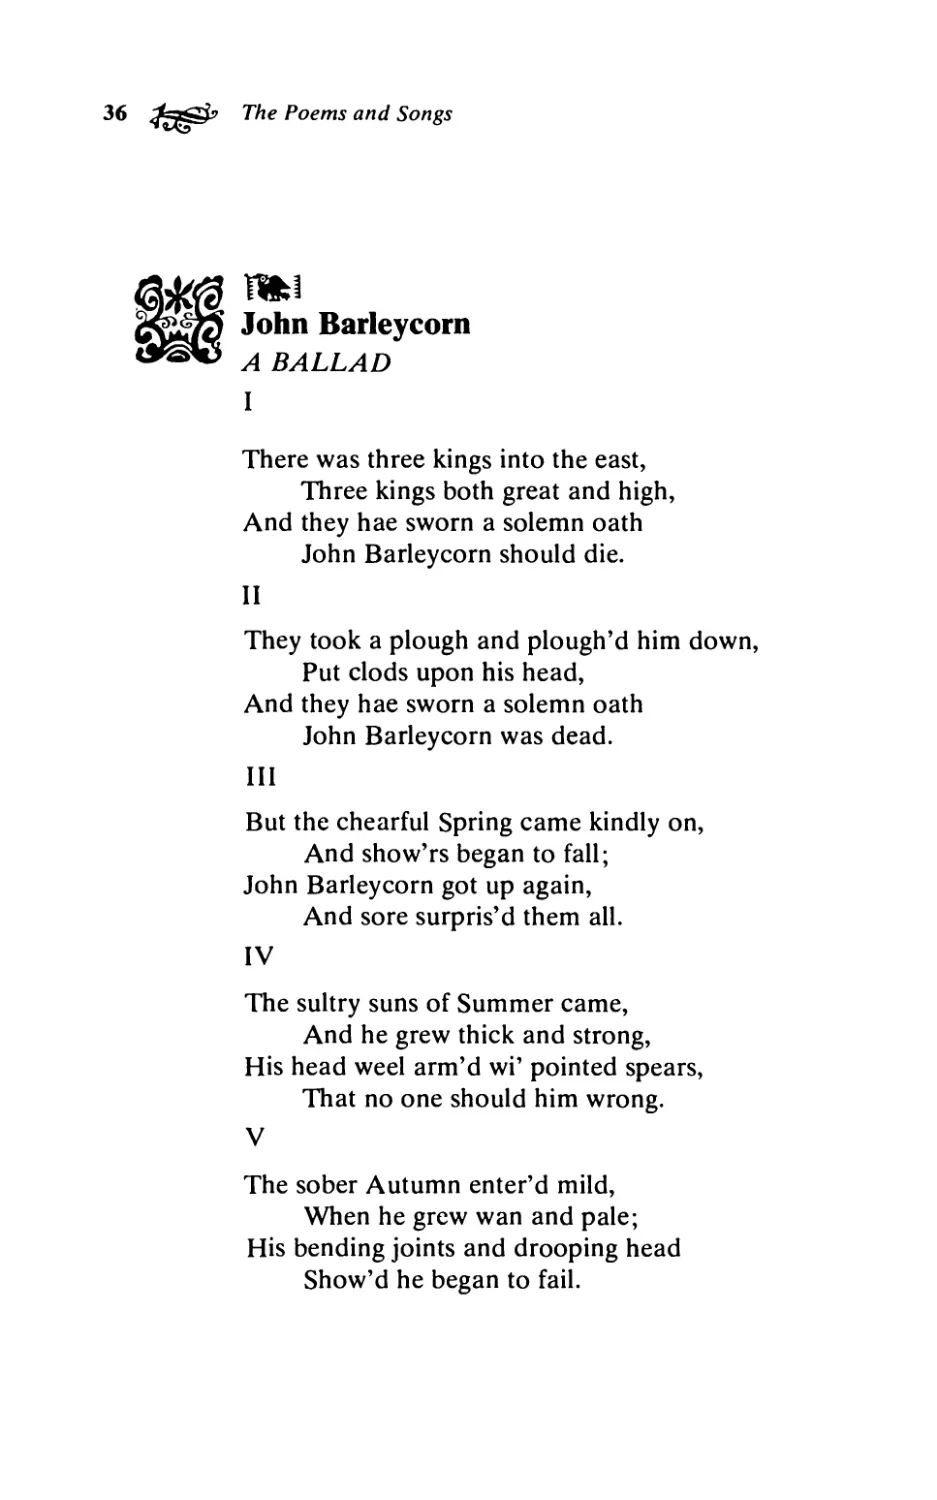 John Barleycorn. A Ballad